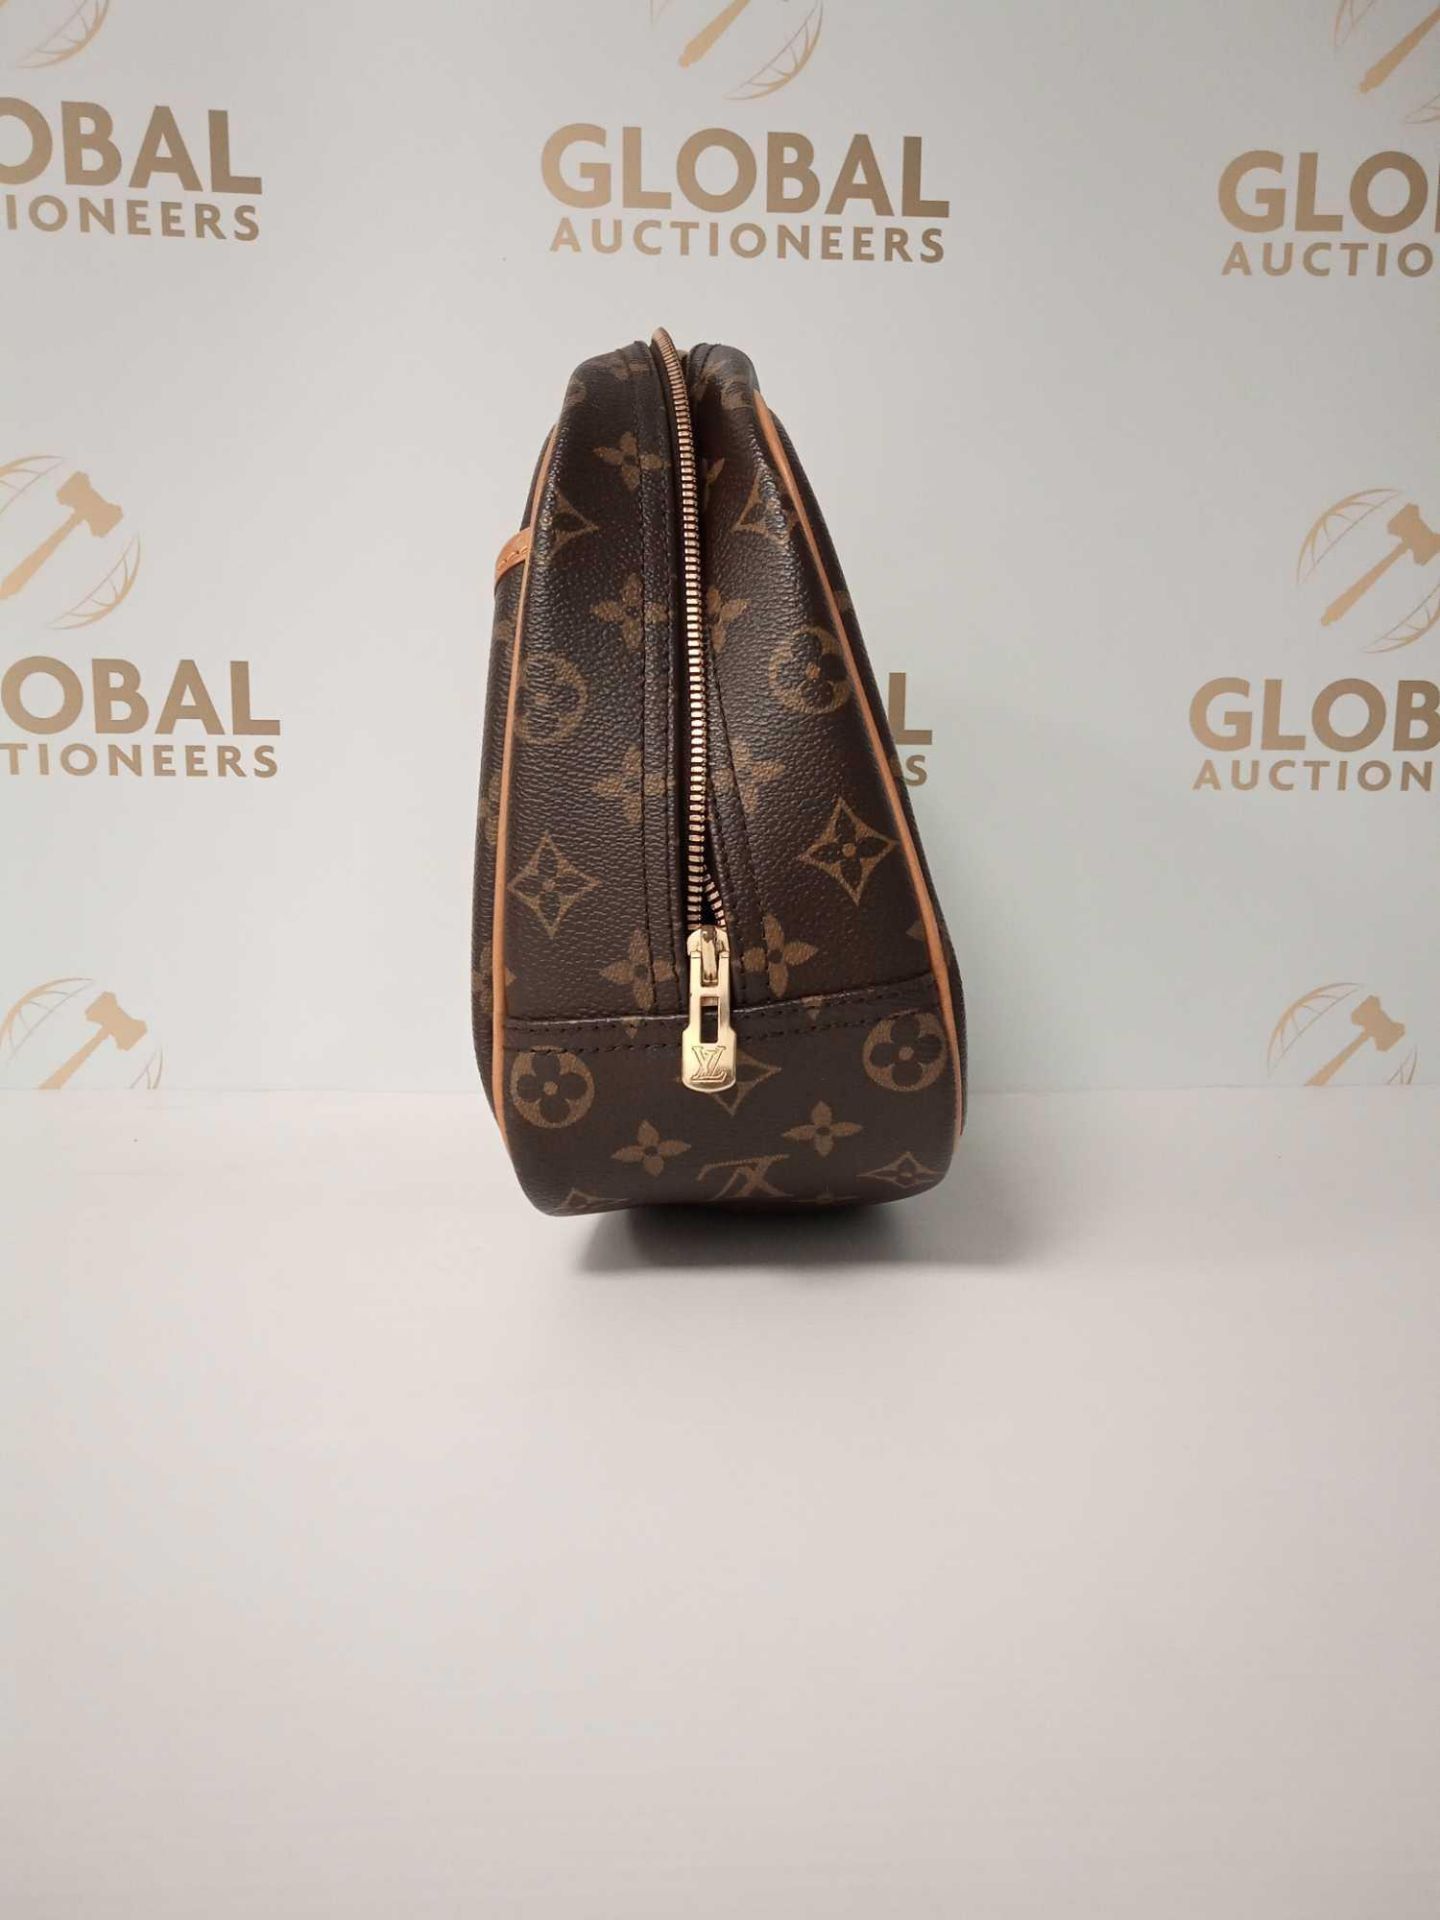 RRP £1300 Louis Vuitton Trouville Handbag Coated Canvas Monogram, Grade A, Aam9805 (Appraisals - Image 2 of 2